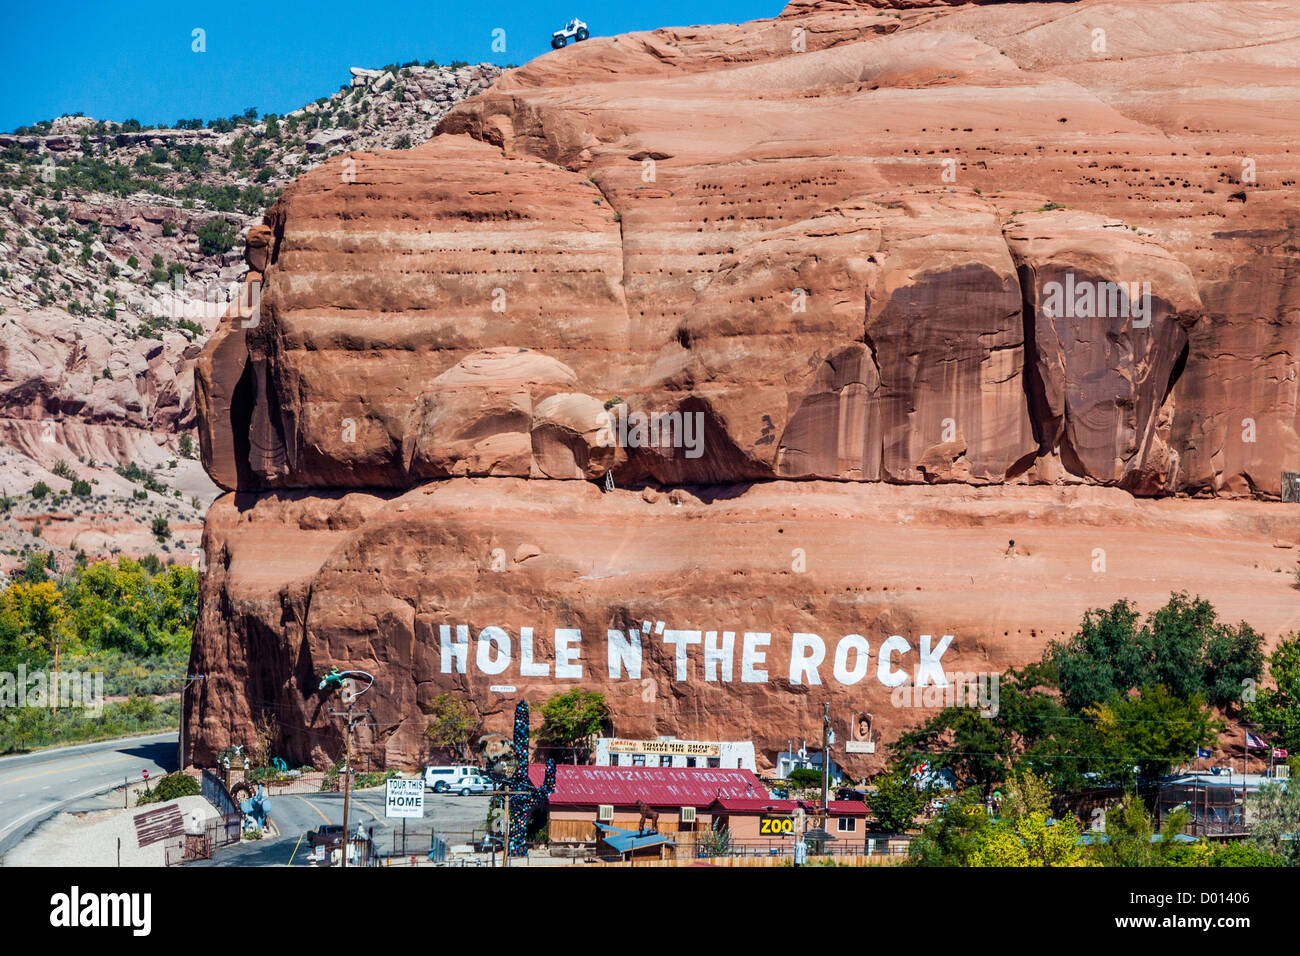 'Hole in the Rock' Touristenstopp auf der landschaftlich schönen US 191 Autobahn in Utah - mit Heim- und Touristenstopp in den Fels gebaut. Stockfoto